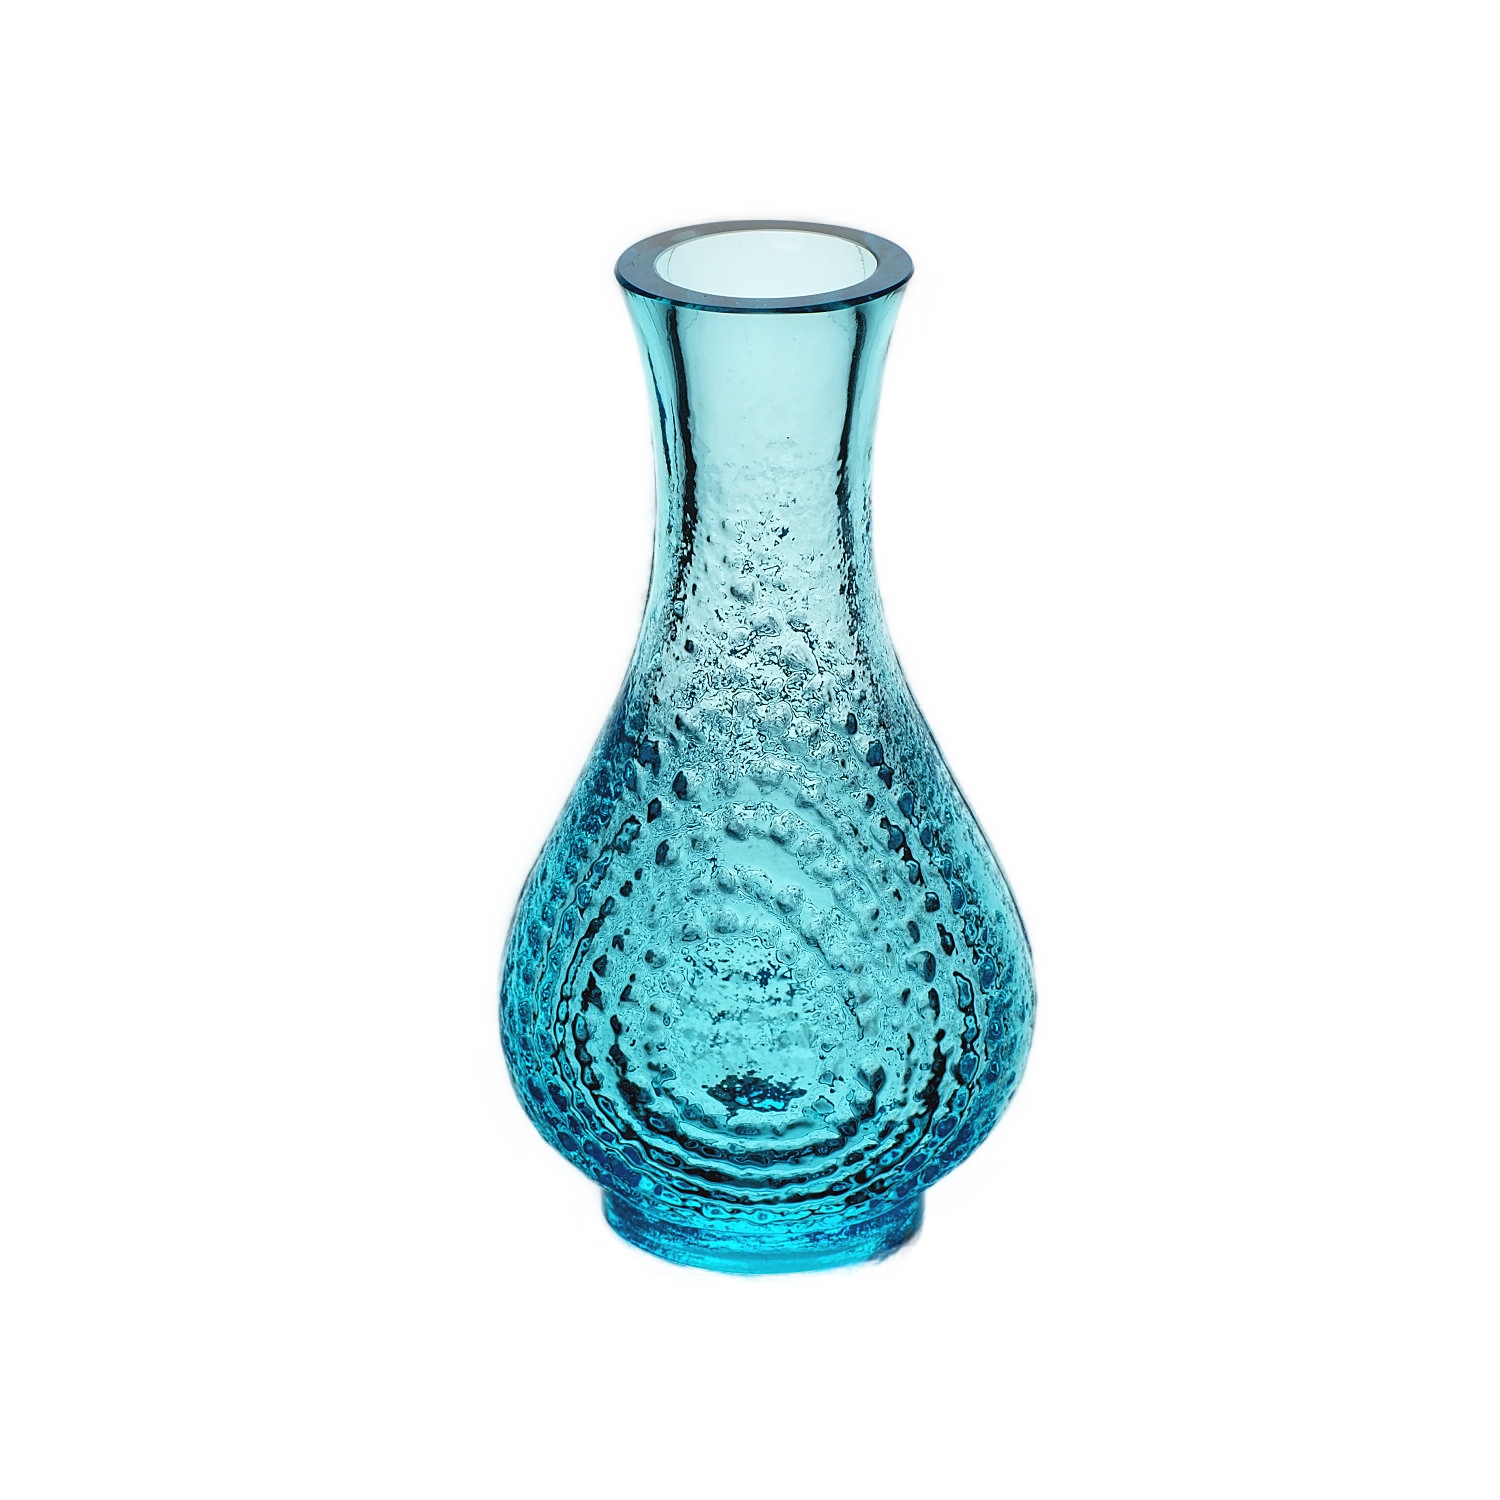 Jablonecké sklárny - 25605/15, Vase